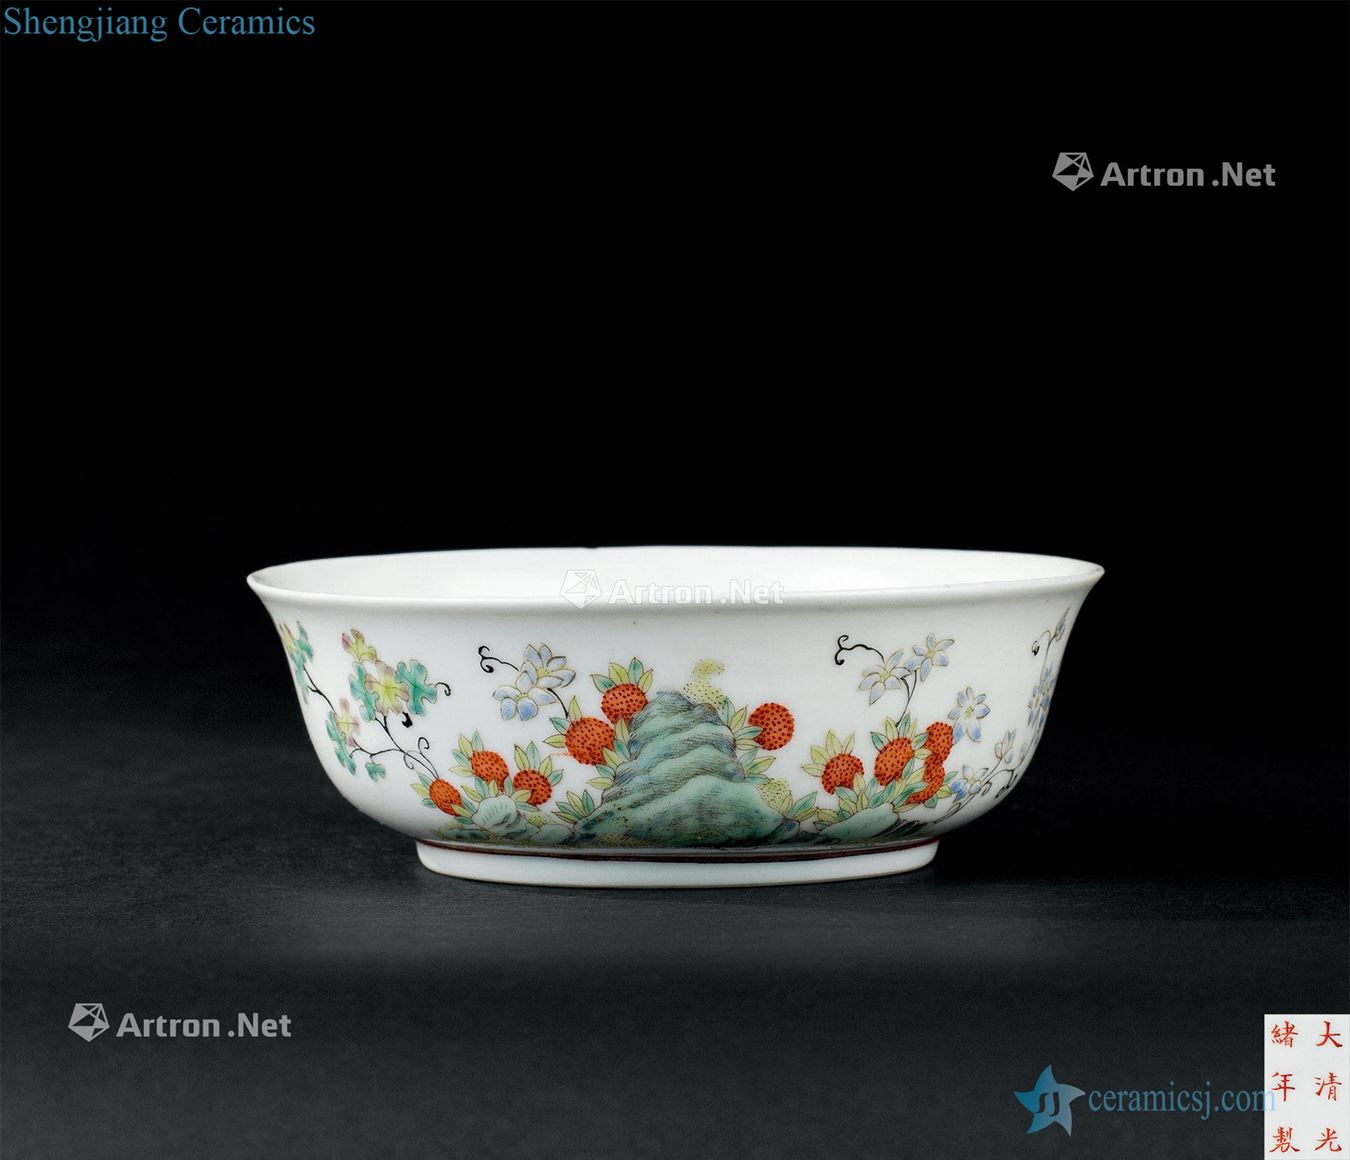 Qing emperor guangxu (1875-1908), pastel flower fruit bowl